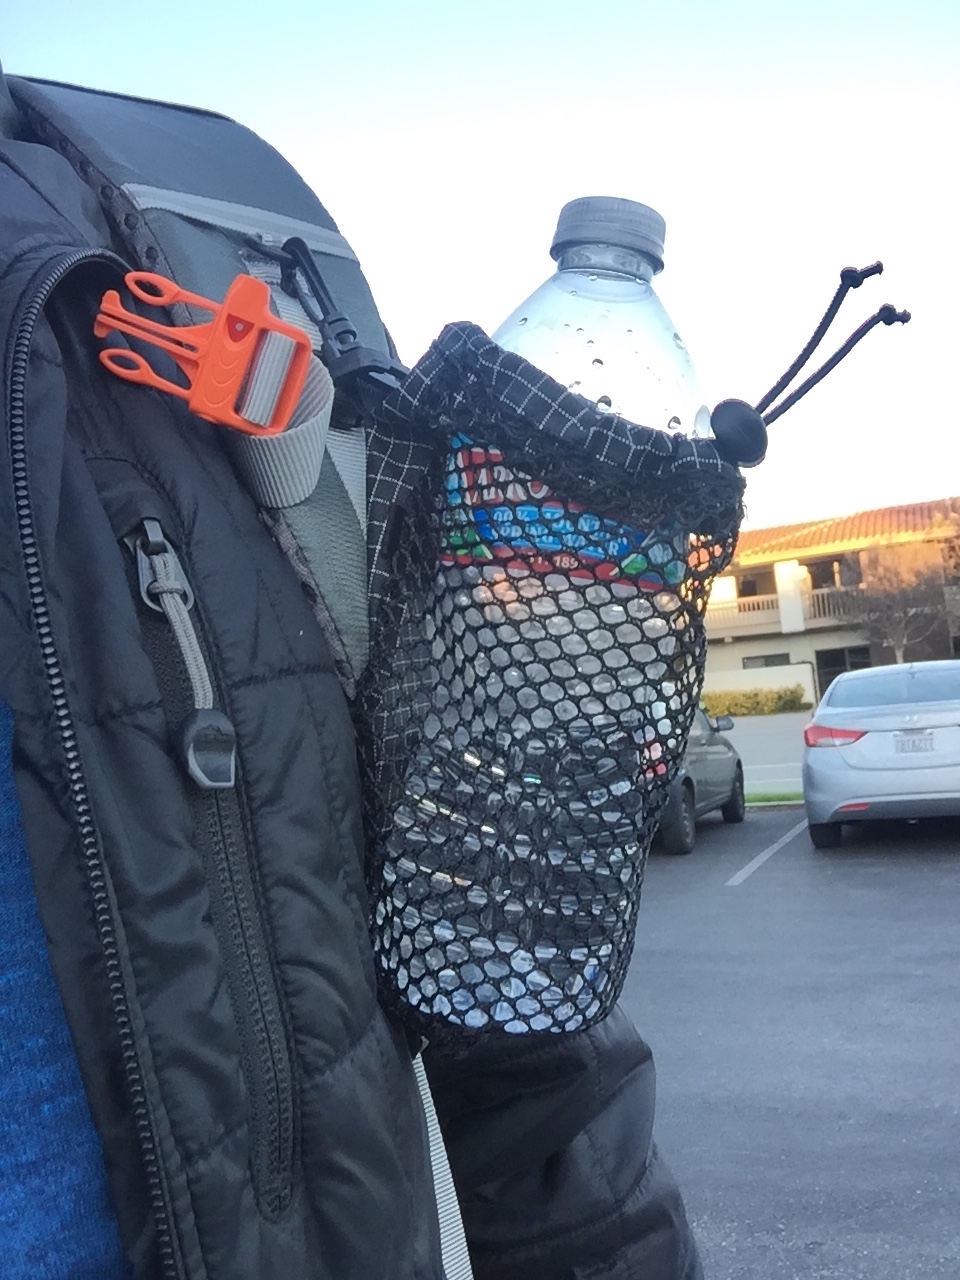 https://backpackinglight.com/wp-content/uploads/bpfed/water_bottle_holder2.jpg